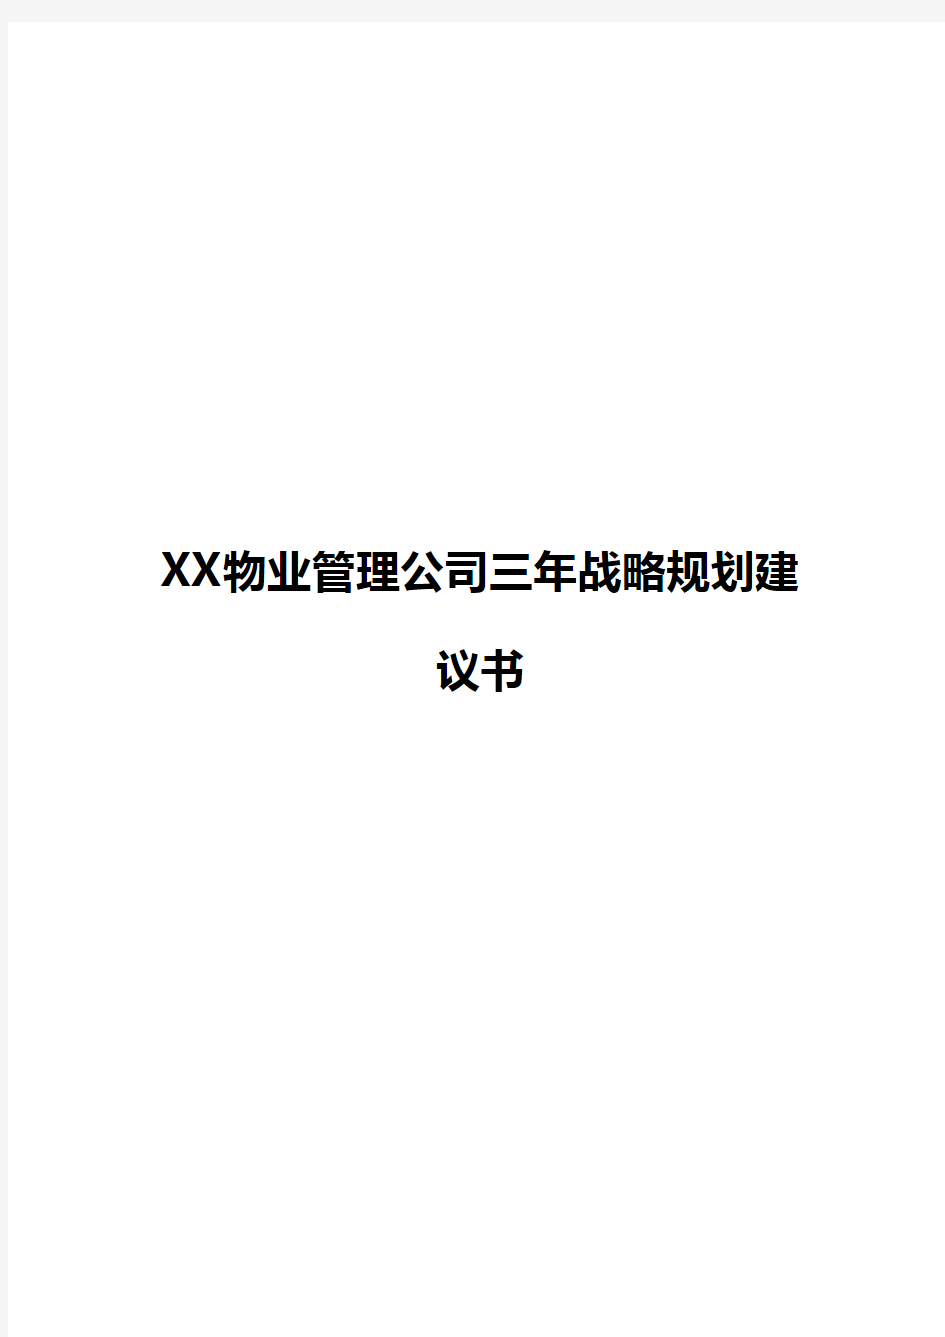 【新版】XX物业管理公司三年战略规划商业建议书